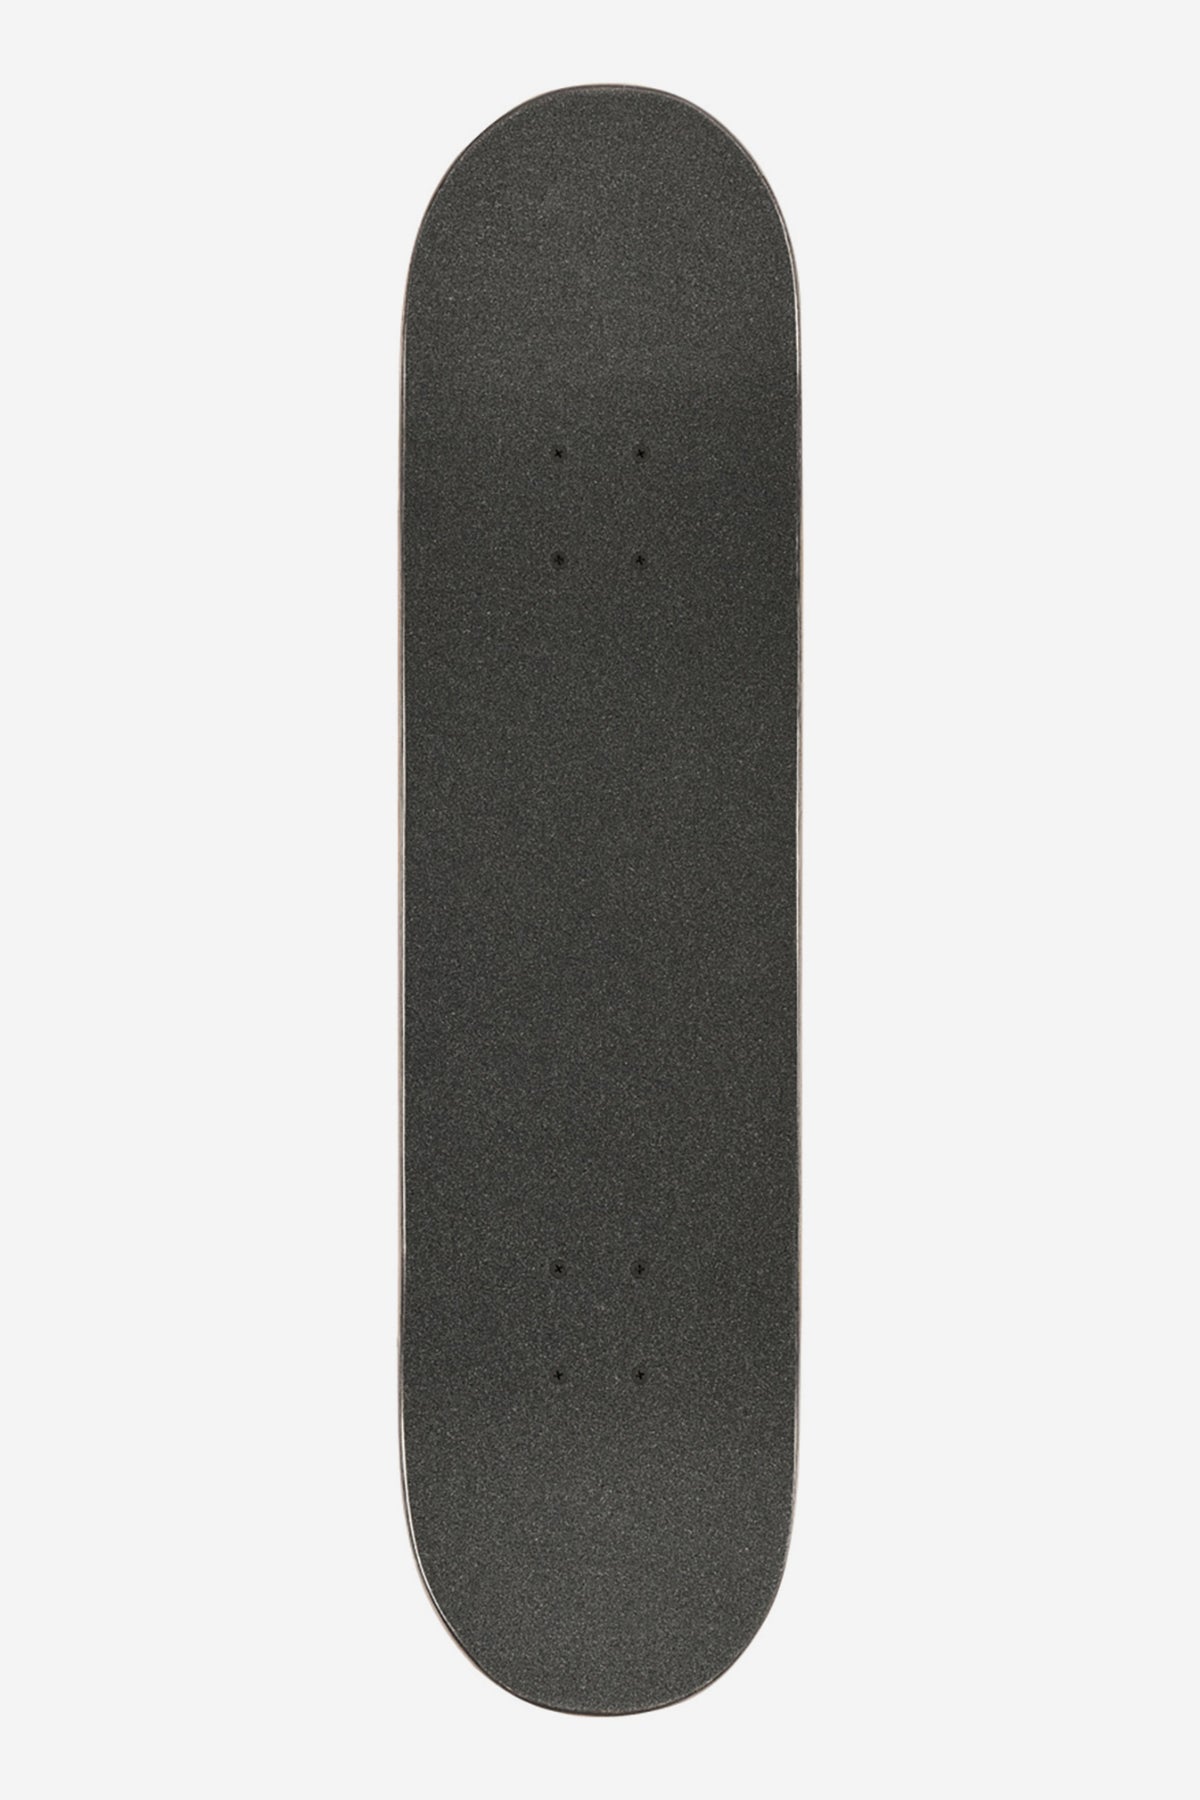 Globe - Goodstock - Sahara- 8.375" Complete Skateboard